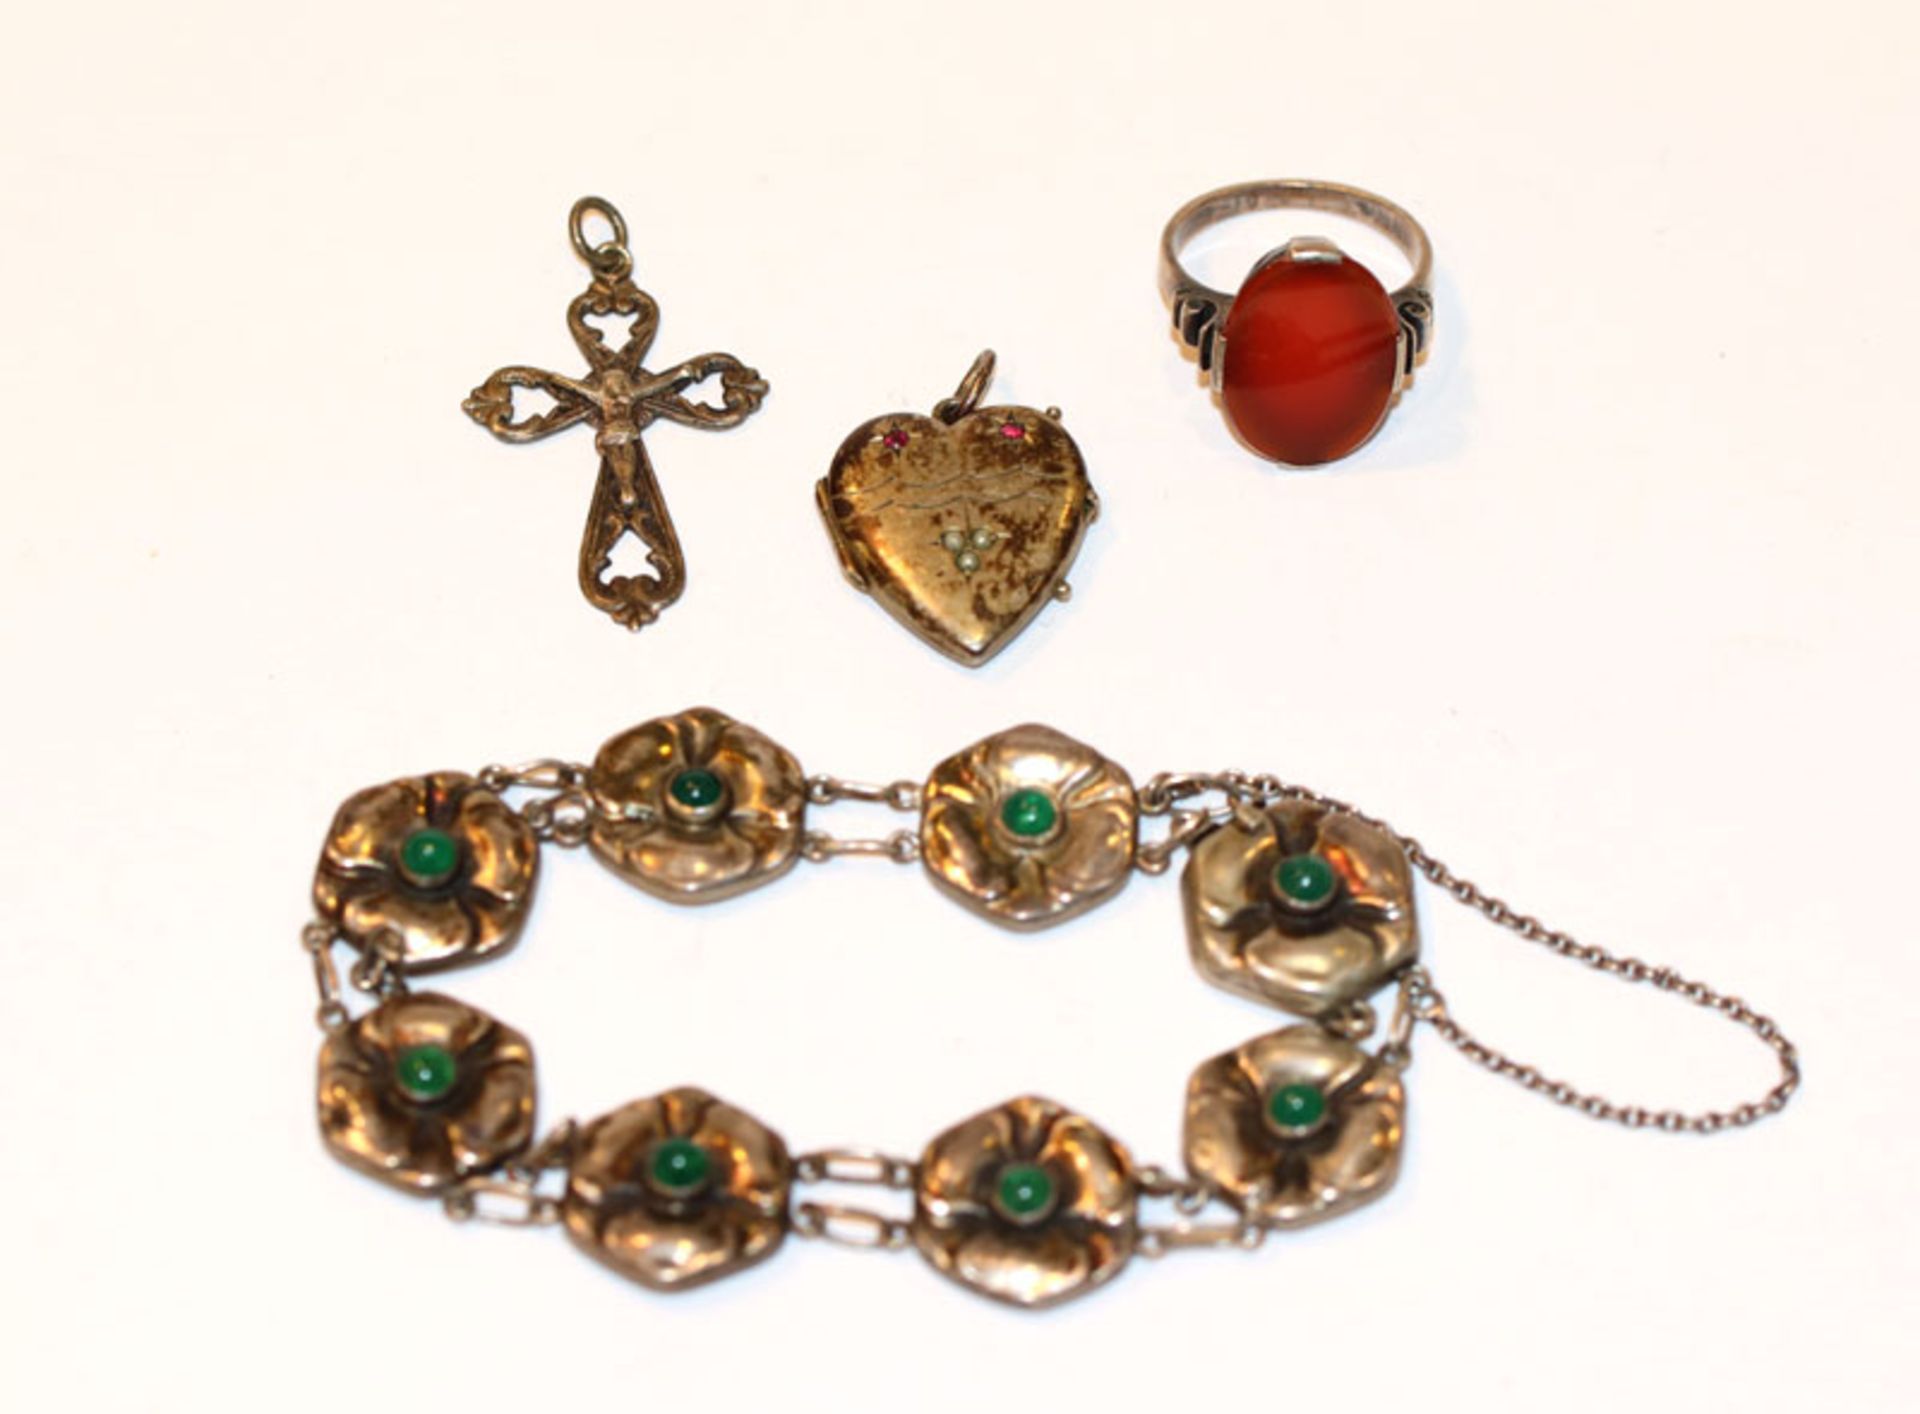 Silber Schmuck-Konvolut: Armband, L 16 cm, Herz-Medaillon Anhänger, Kreuz-Anhänger und Ring mit